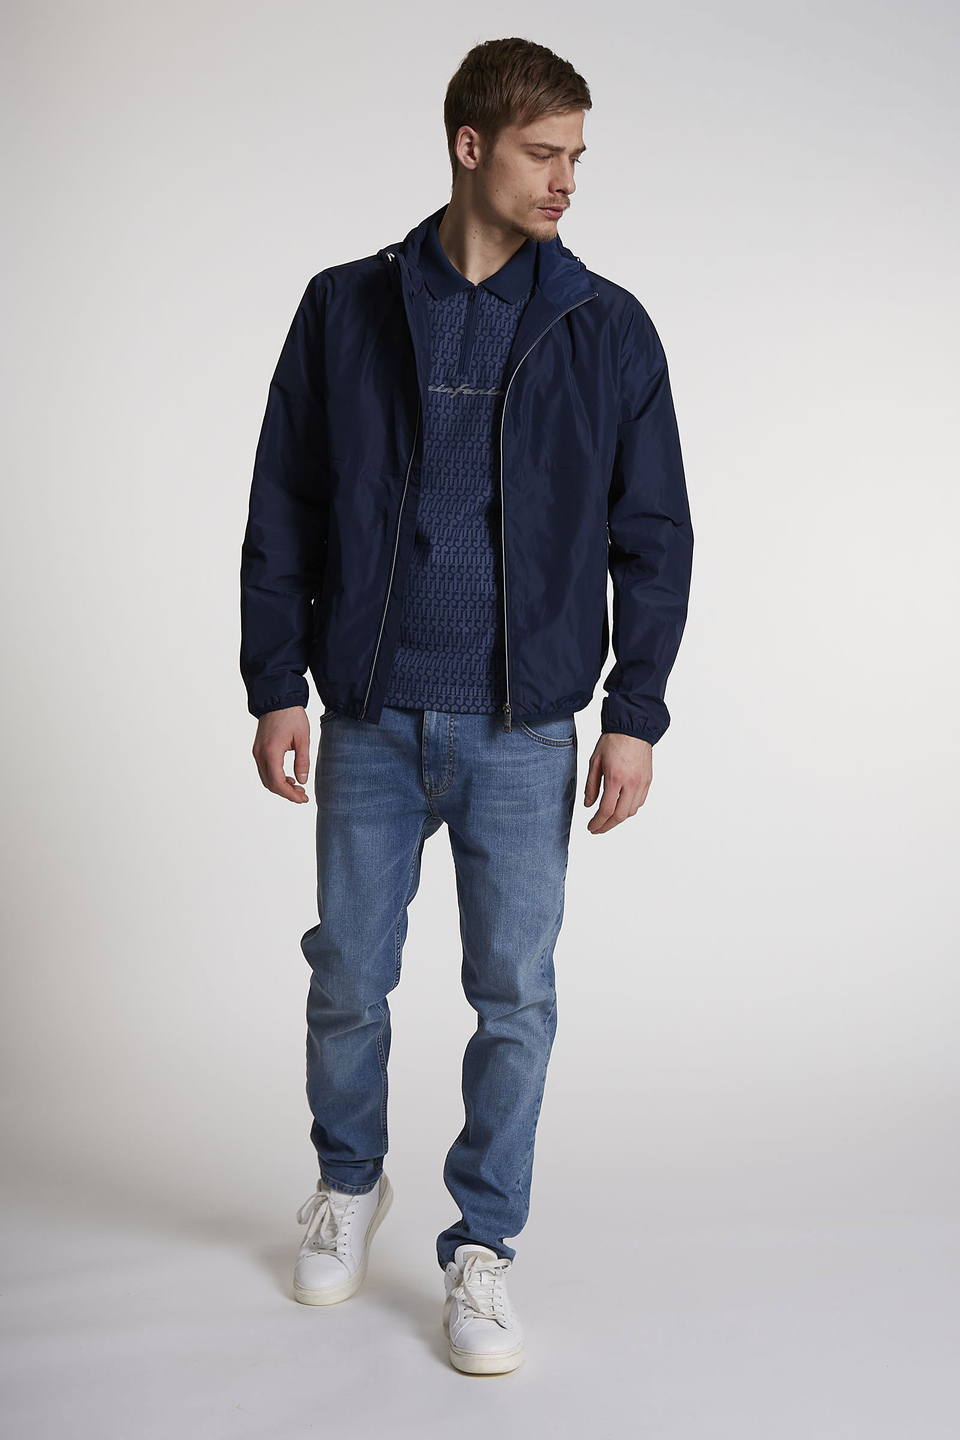 Men's long-sleeved regular-fit nylon jacket | La Martina - Official Online Shop